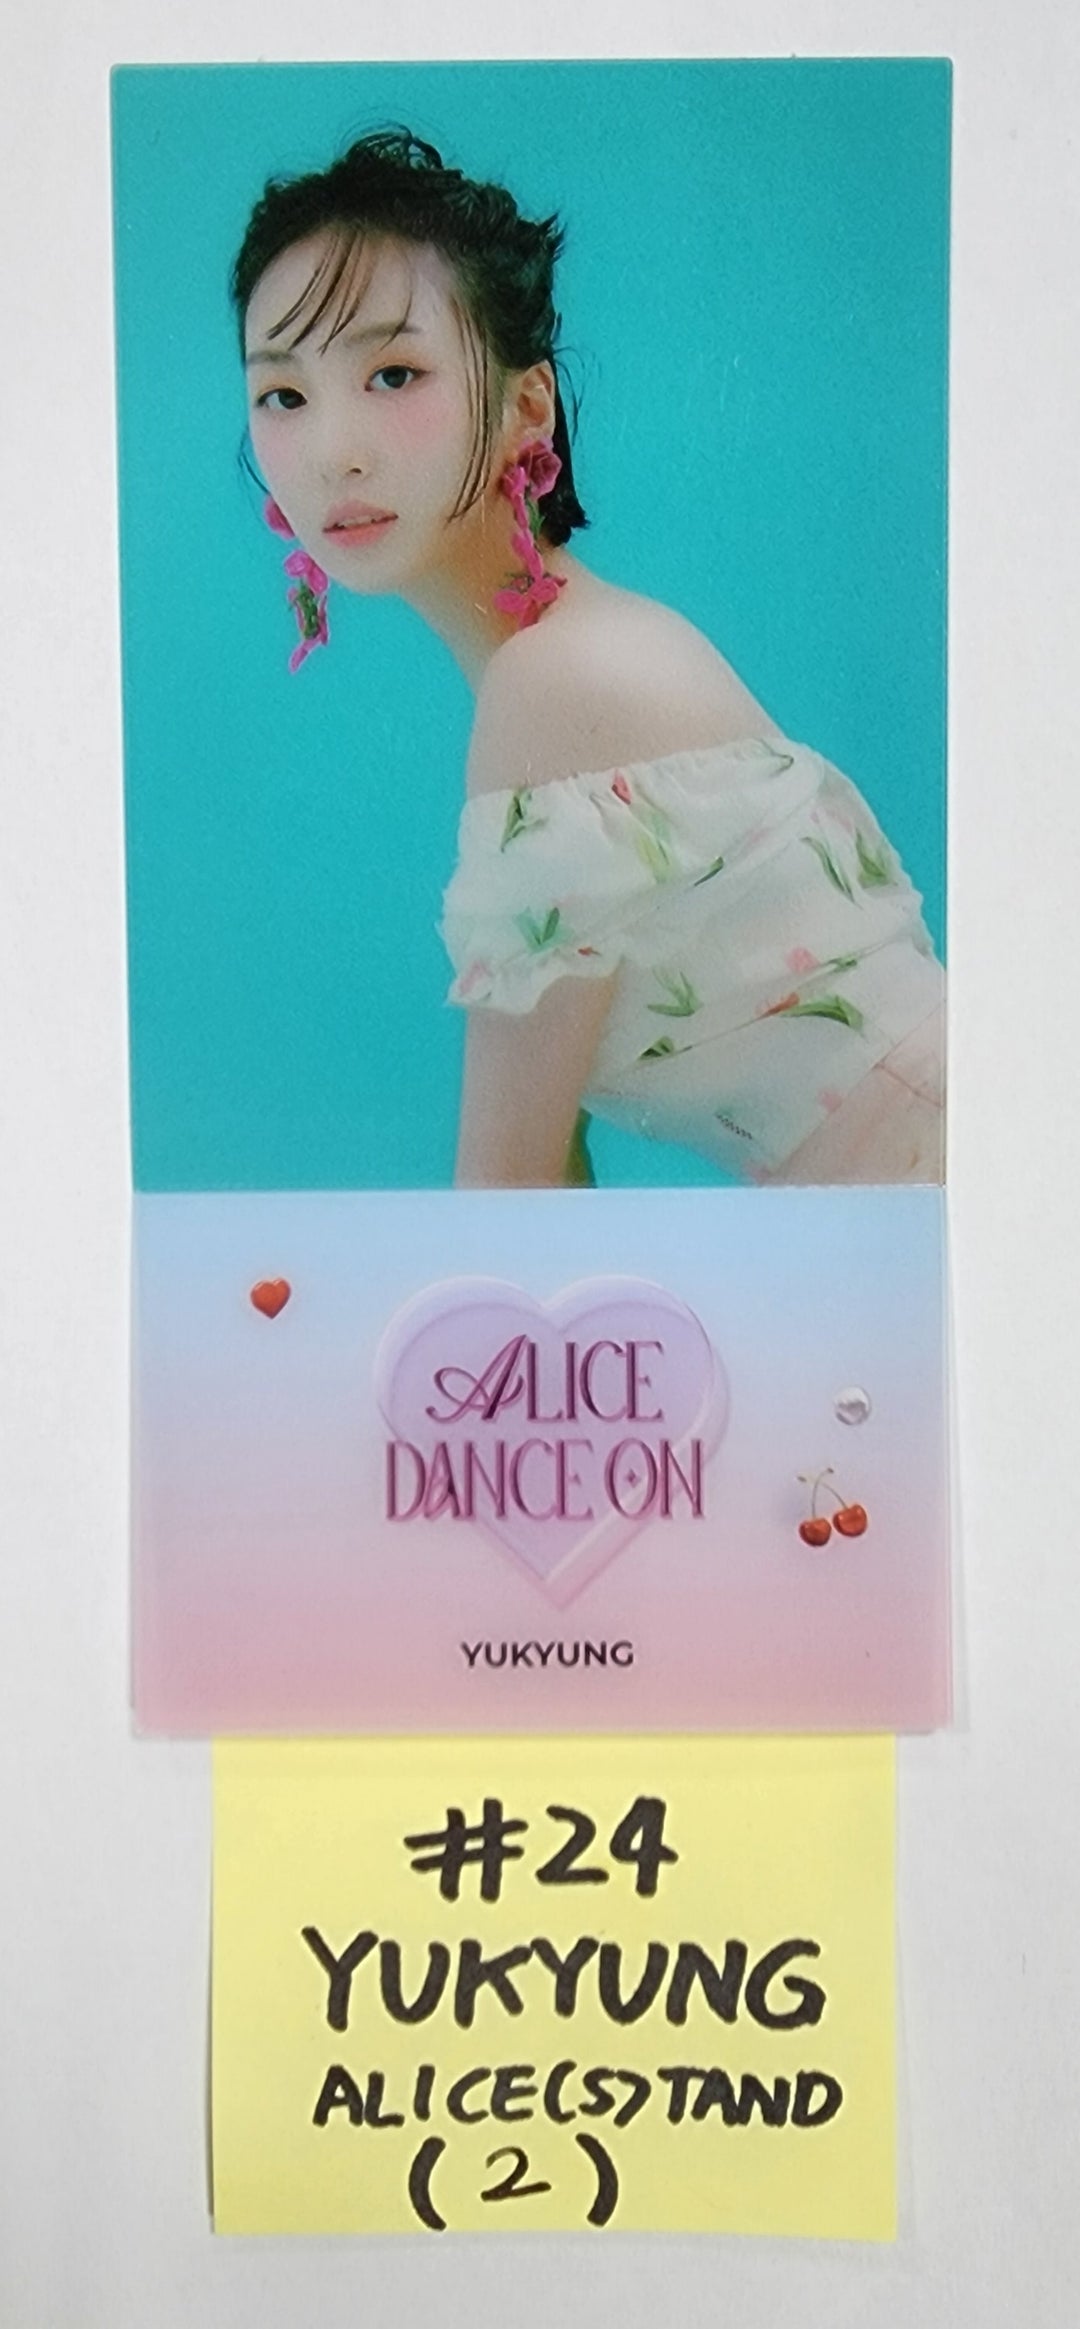 ALICE「DANCE ON」オフィシャルフォトカード、メッセージカード、ALCE(S)TAND